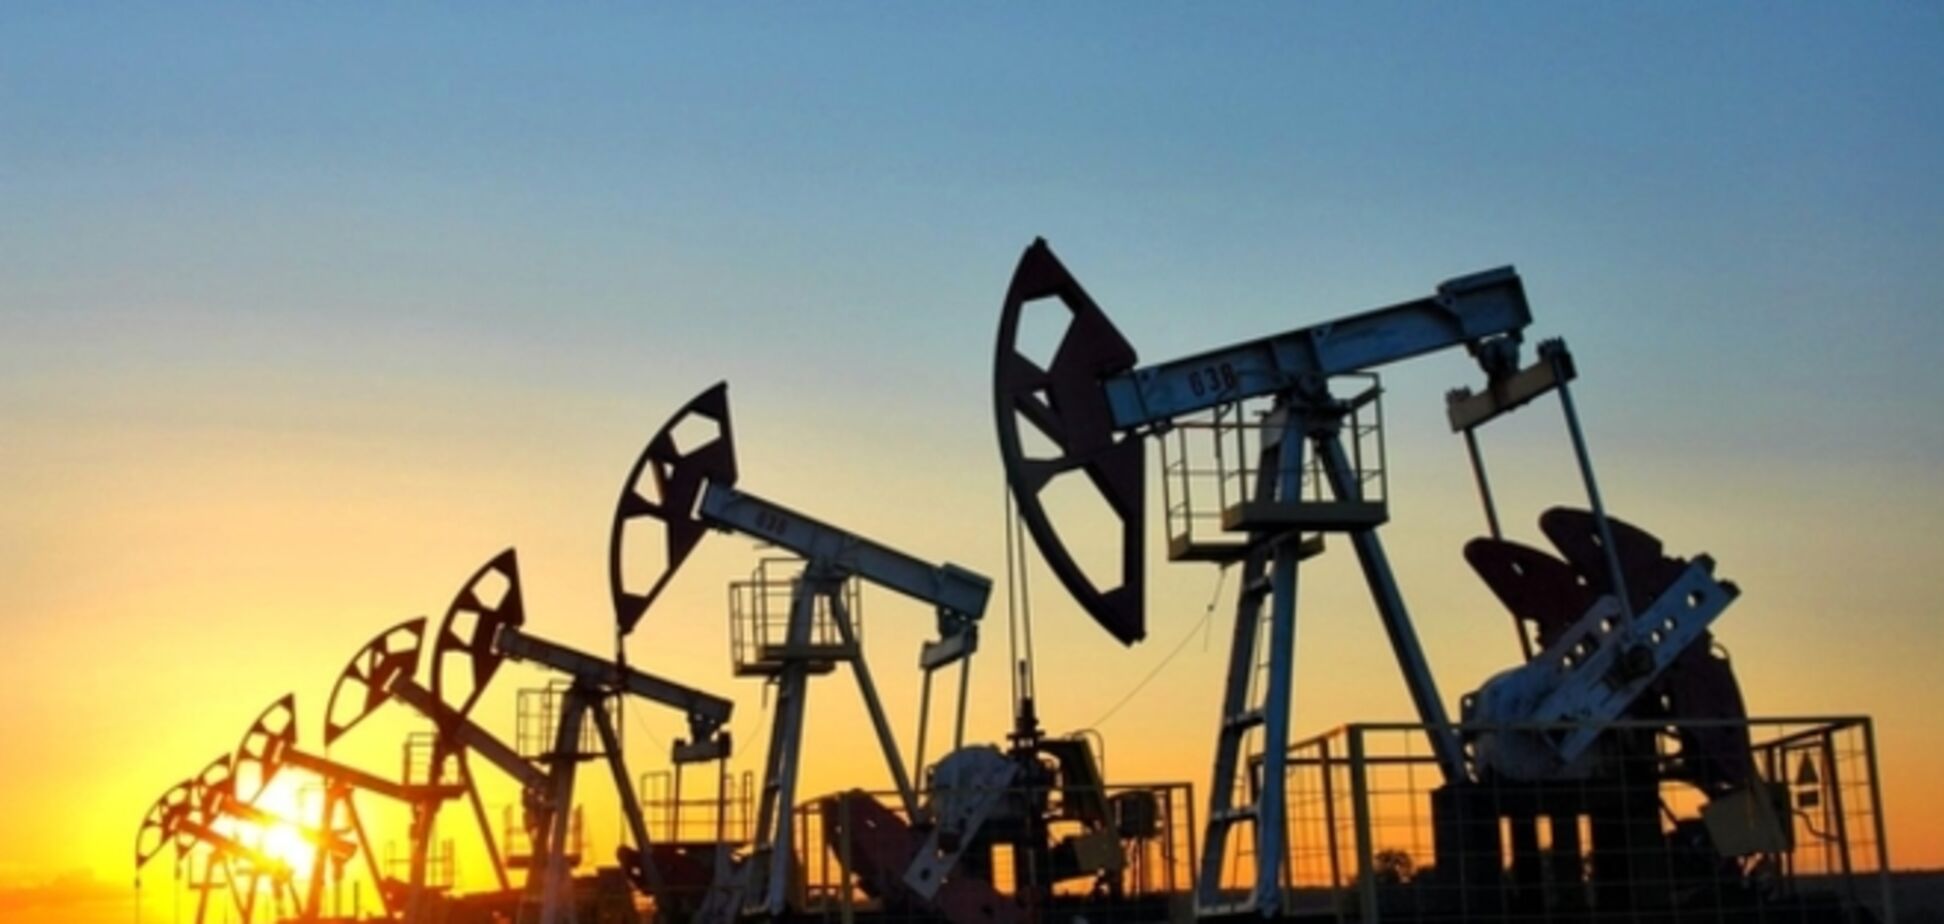  Американская нефтекомпания ушла из России из-за санкций